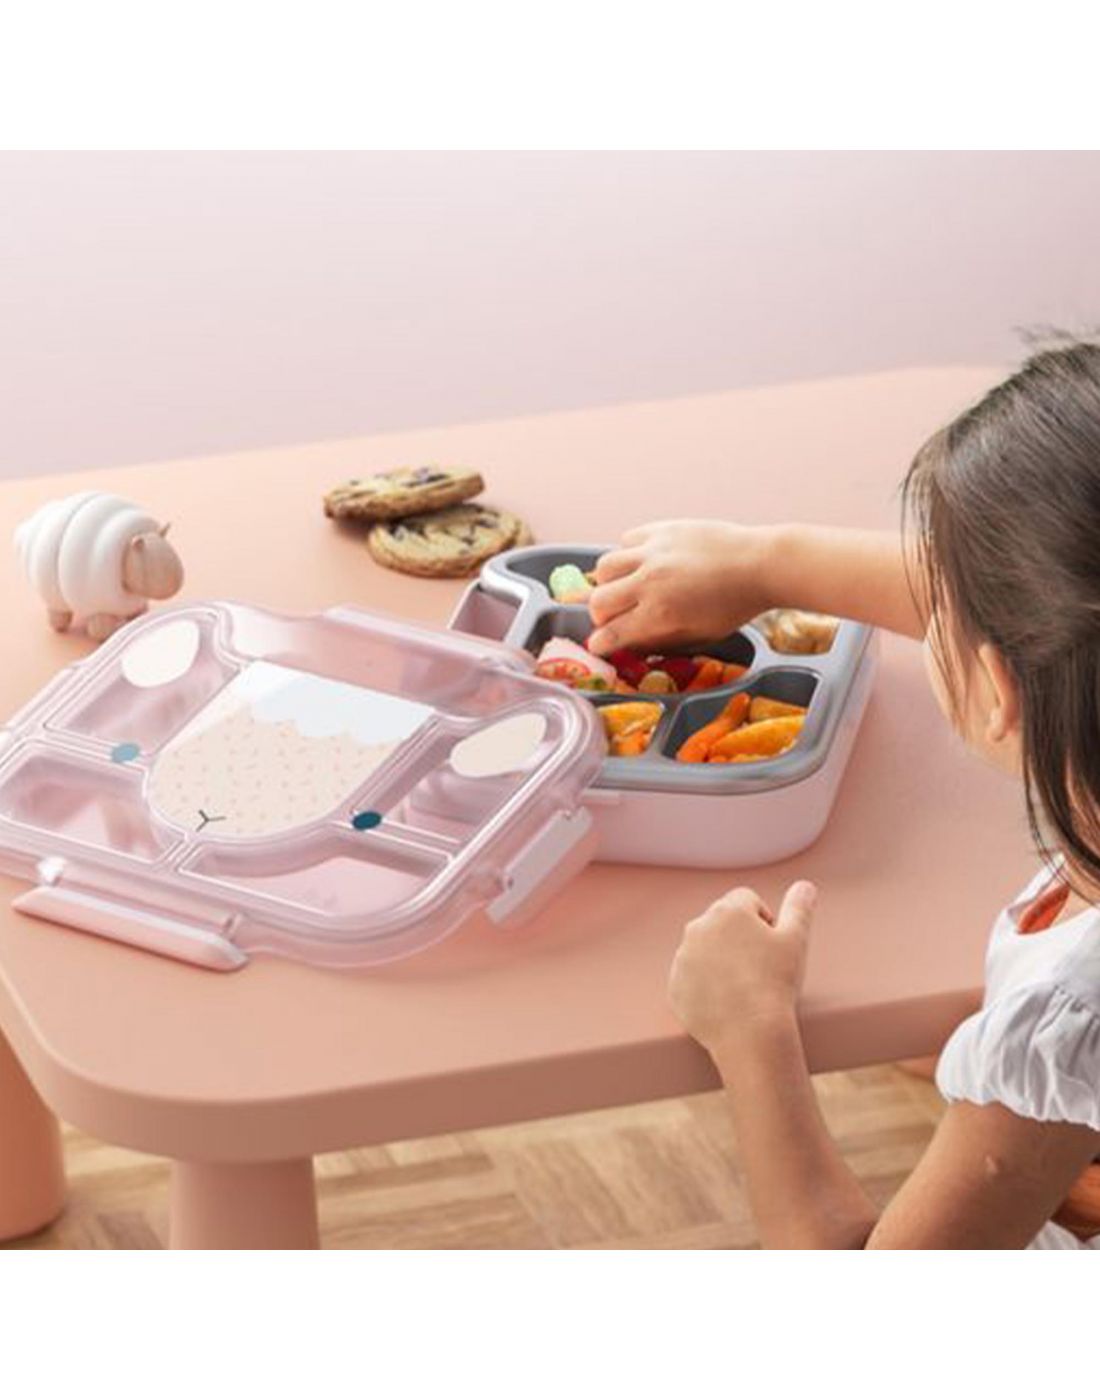 Παιδκός Δίσκος-Δοχείο Φαγητού με Χωρίσματα 950ml ΜΒ Wonder Pink Shepp Monbento